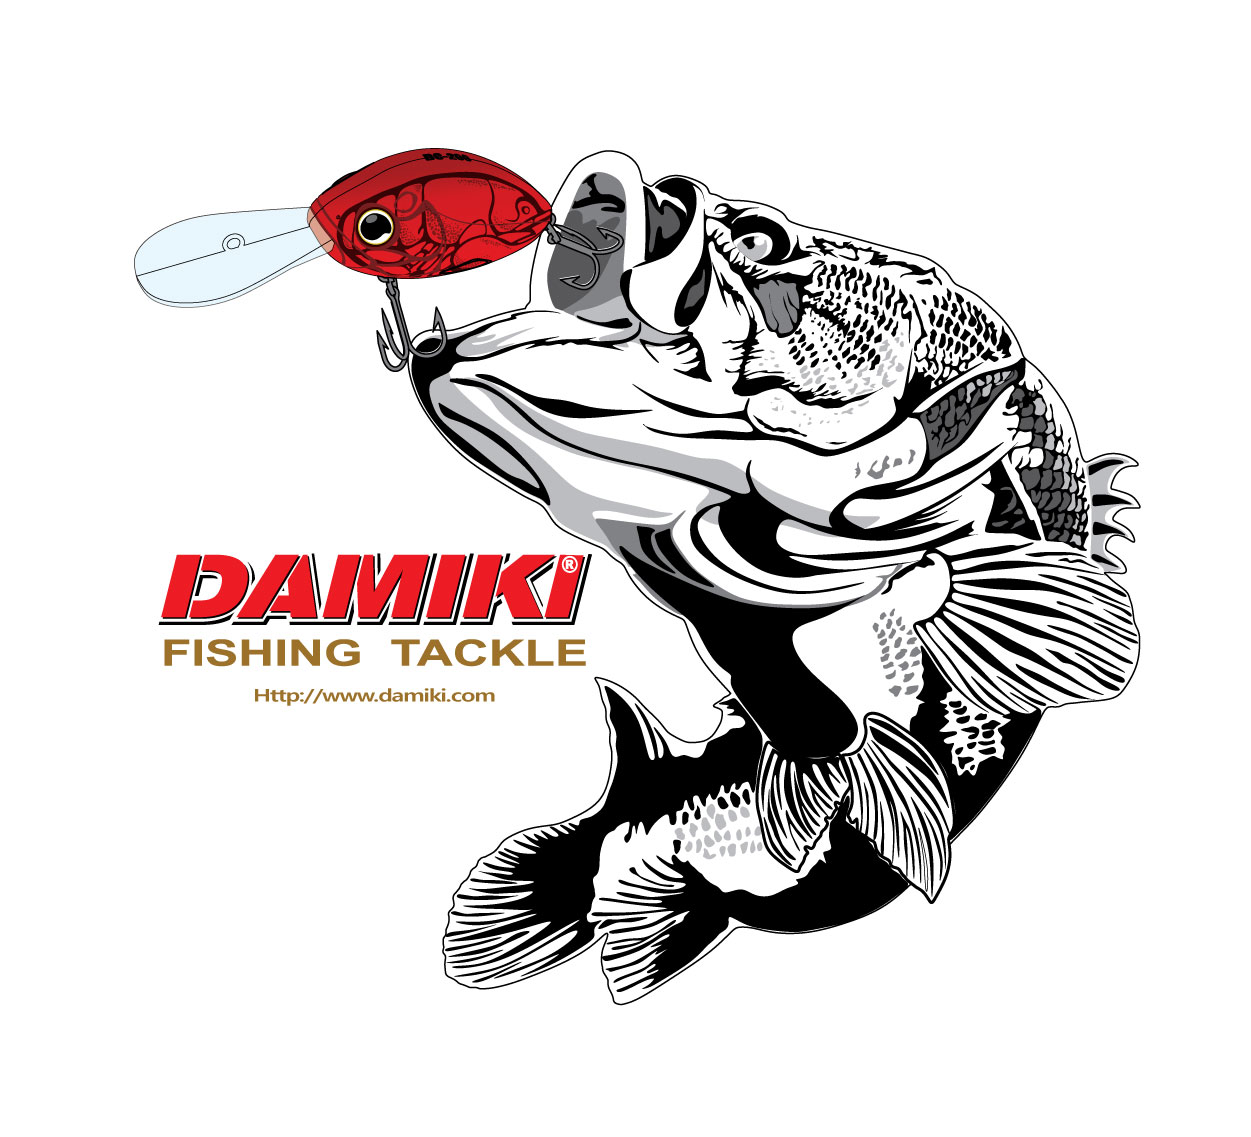 Damiki : Maxipesca, the Store